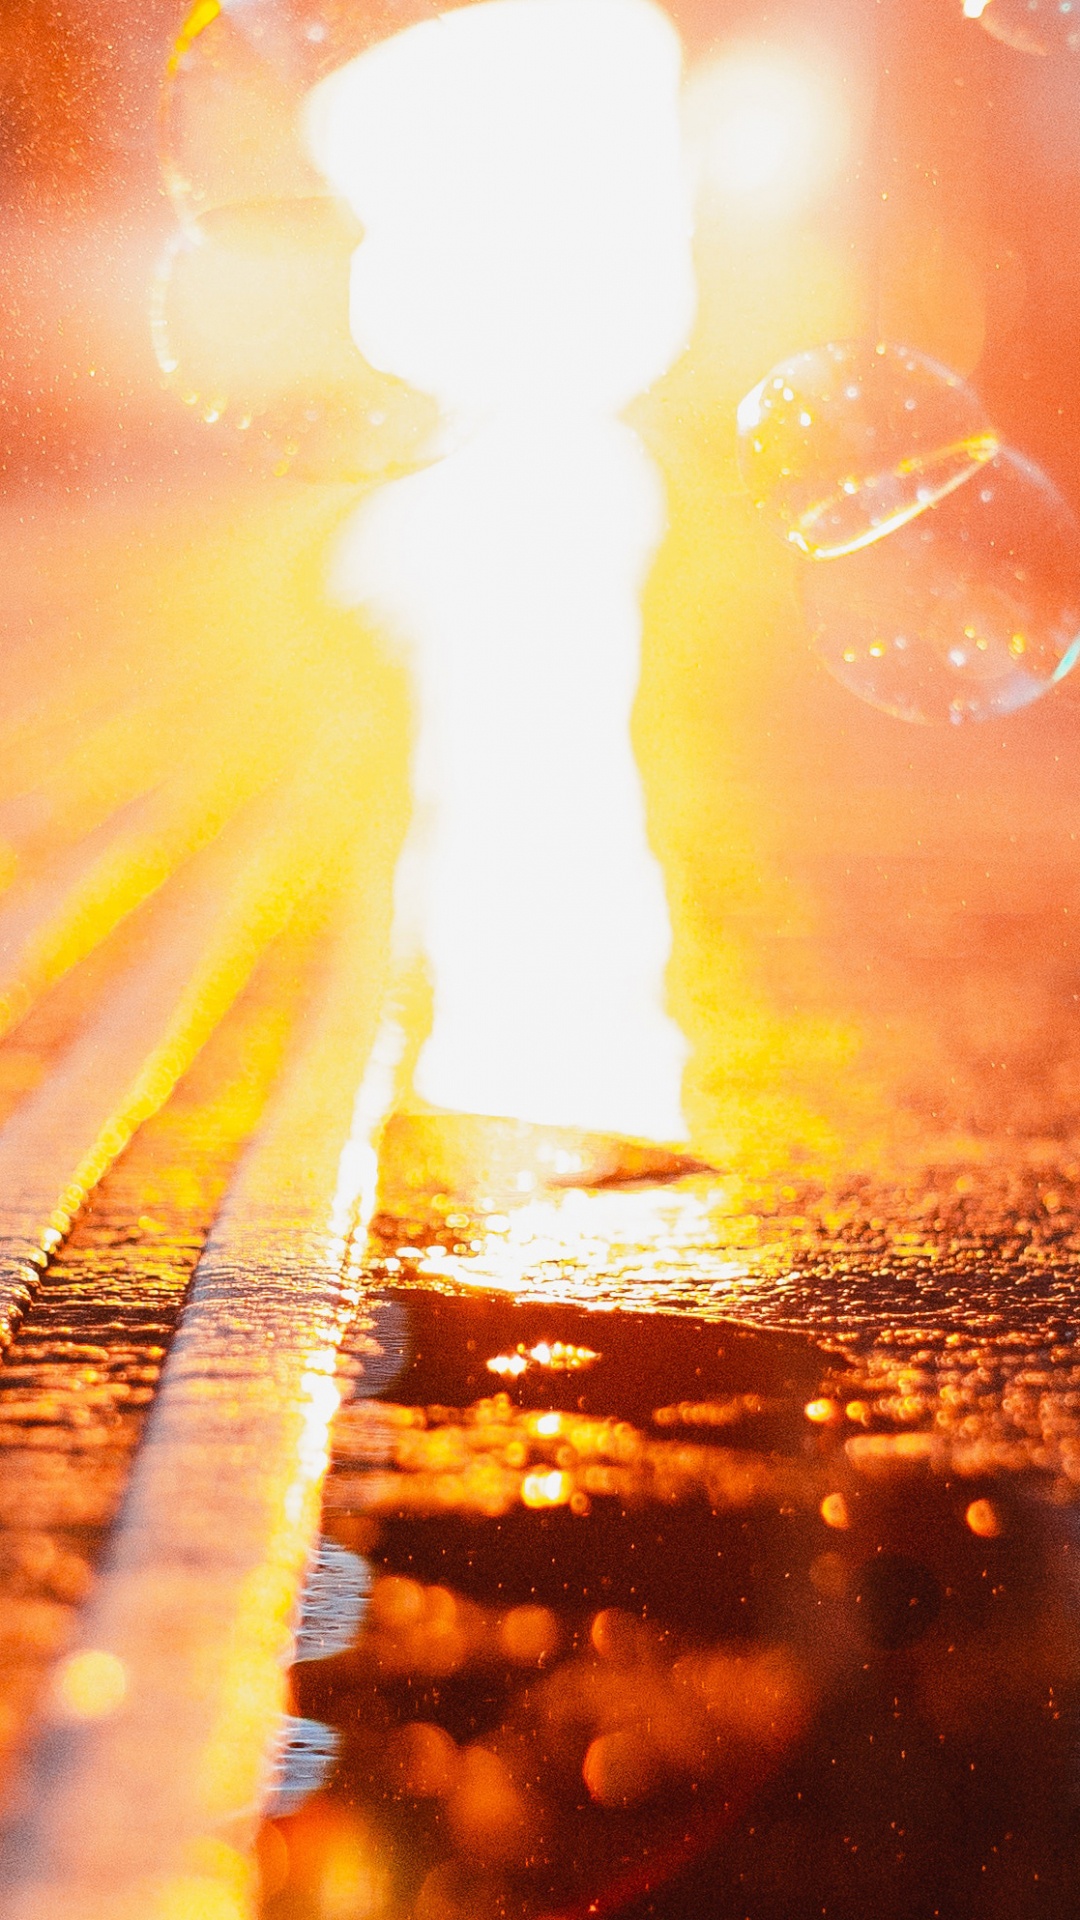 Photographie Bokeh du Soleil Dans le Ciel. Wallpaper in 1080x1920 Resolution